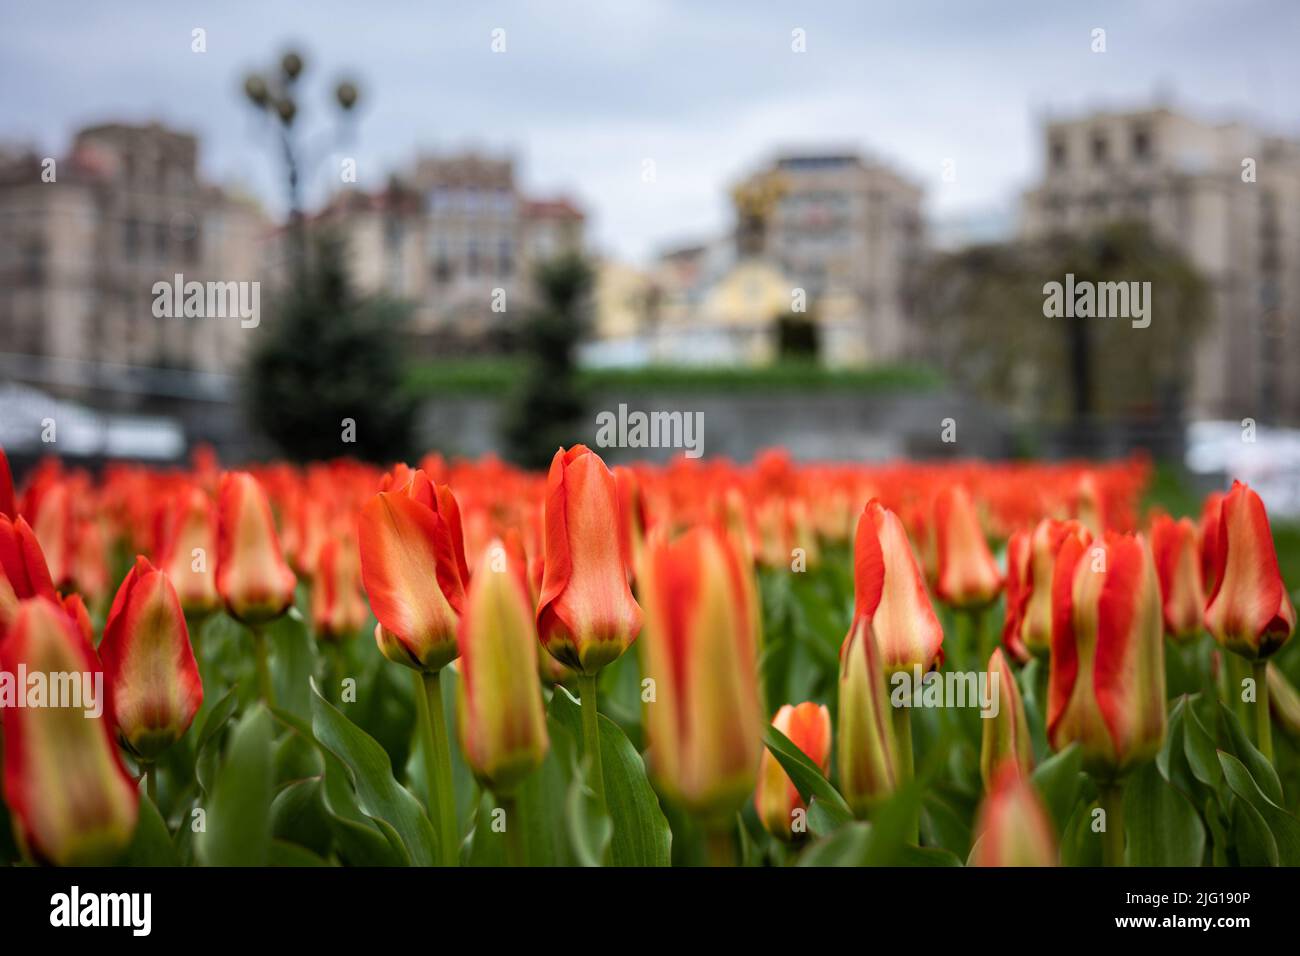 Le Royaume des pays-Bas a présenté à Kiev des centaines de milliers de bulbes de tulipe en mémoire de l'exploit les héros de la Révolution de la tulipe dignité Banque D'Images